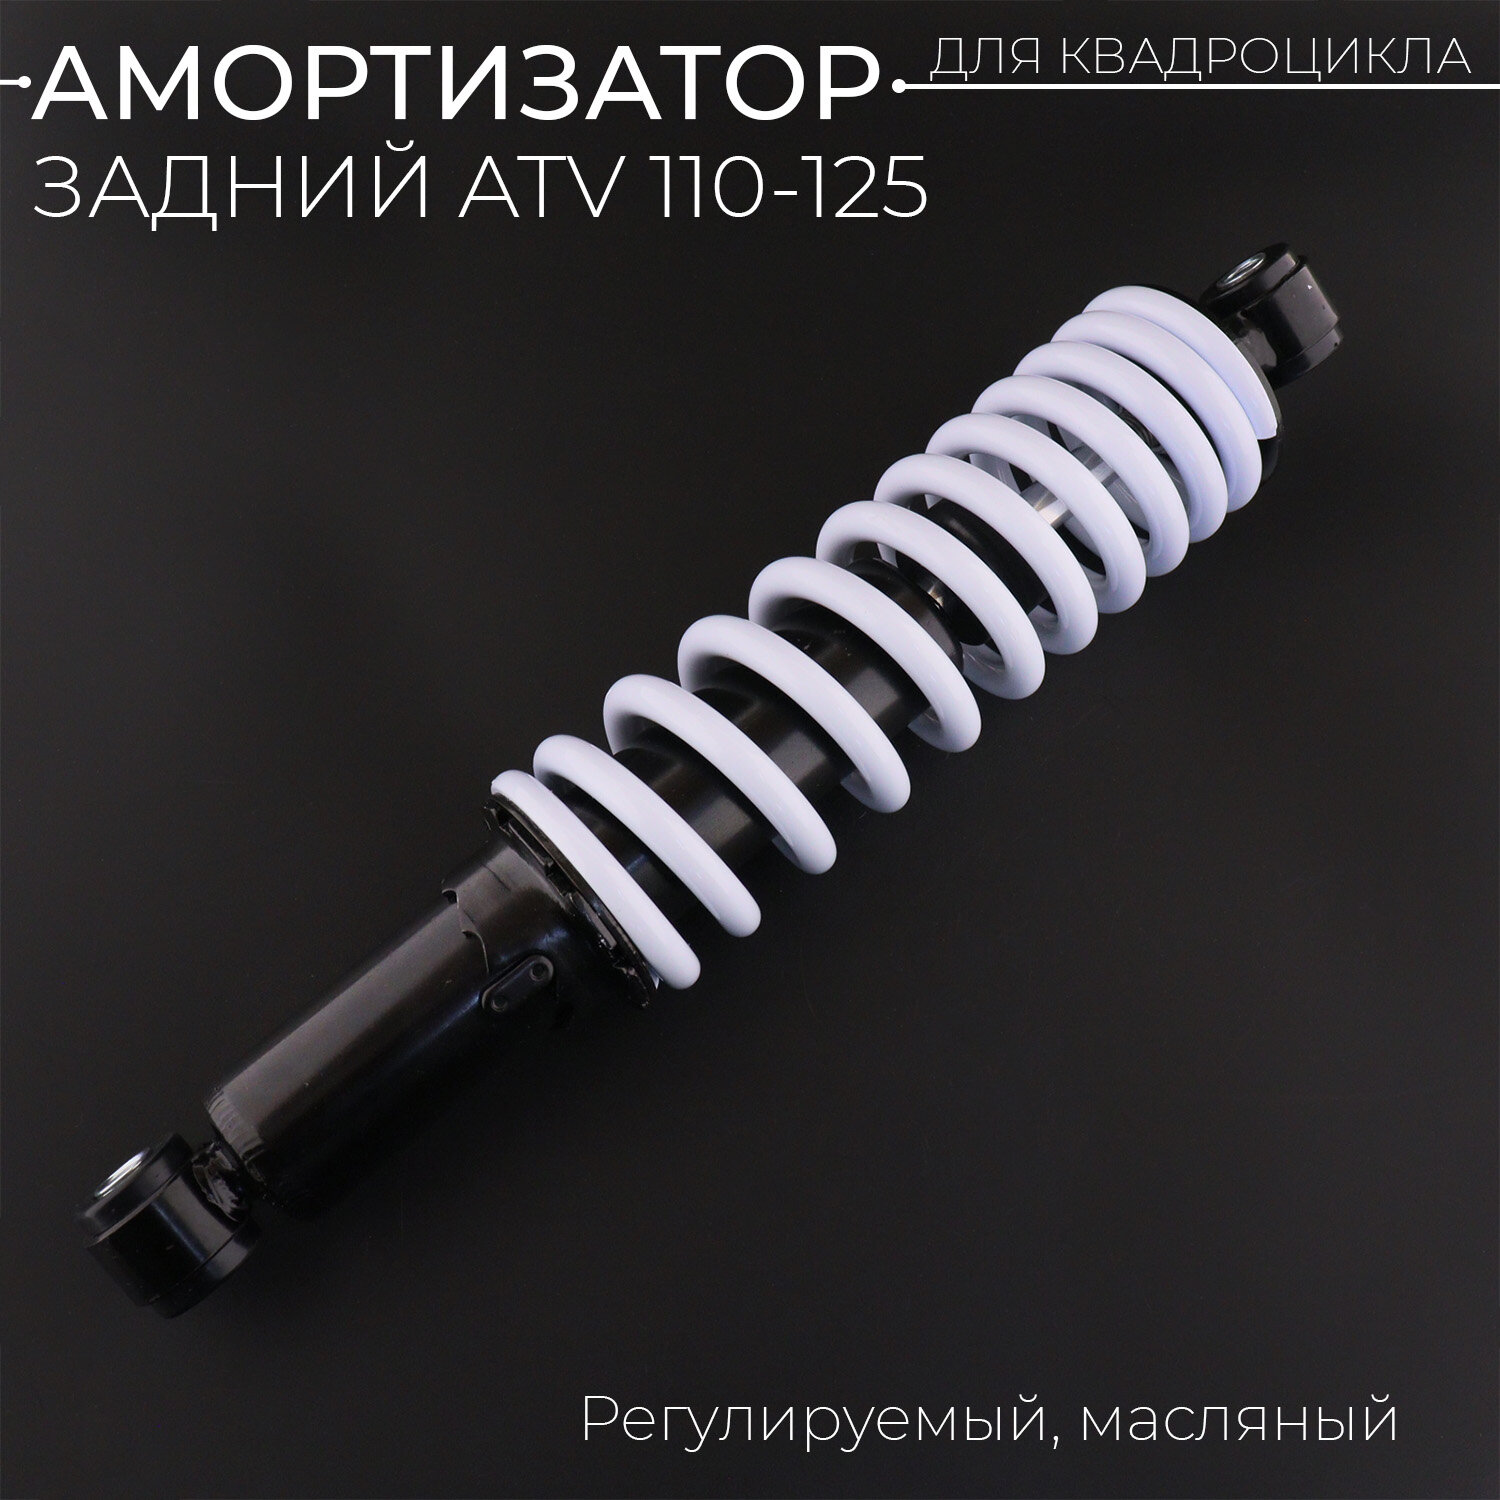 Амортизатор задний масл. ATV 110-125 (340 мм; D-10/10мм, регулируемый, черно-белый) "BEEZMOTO"